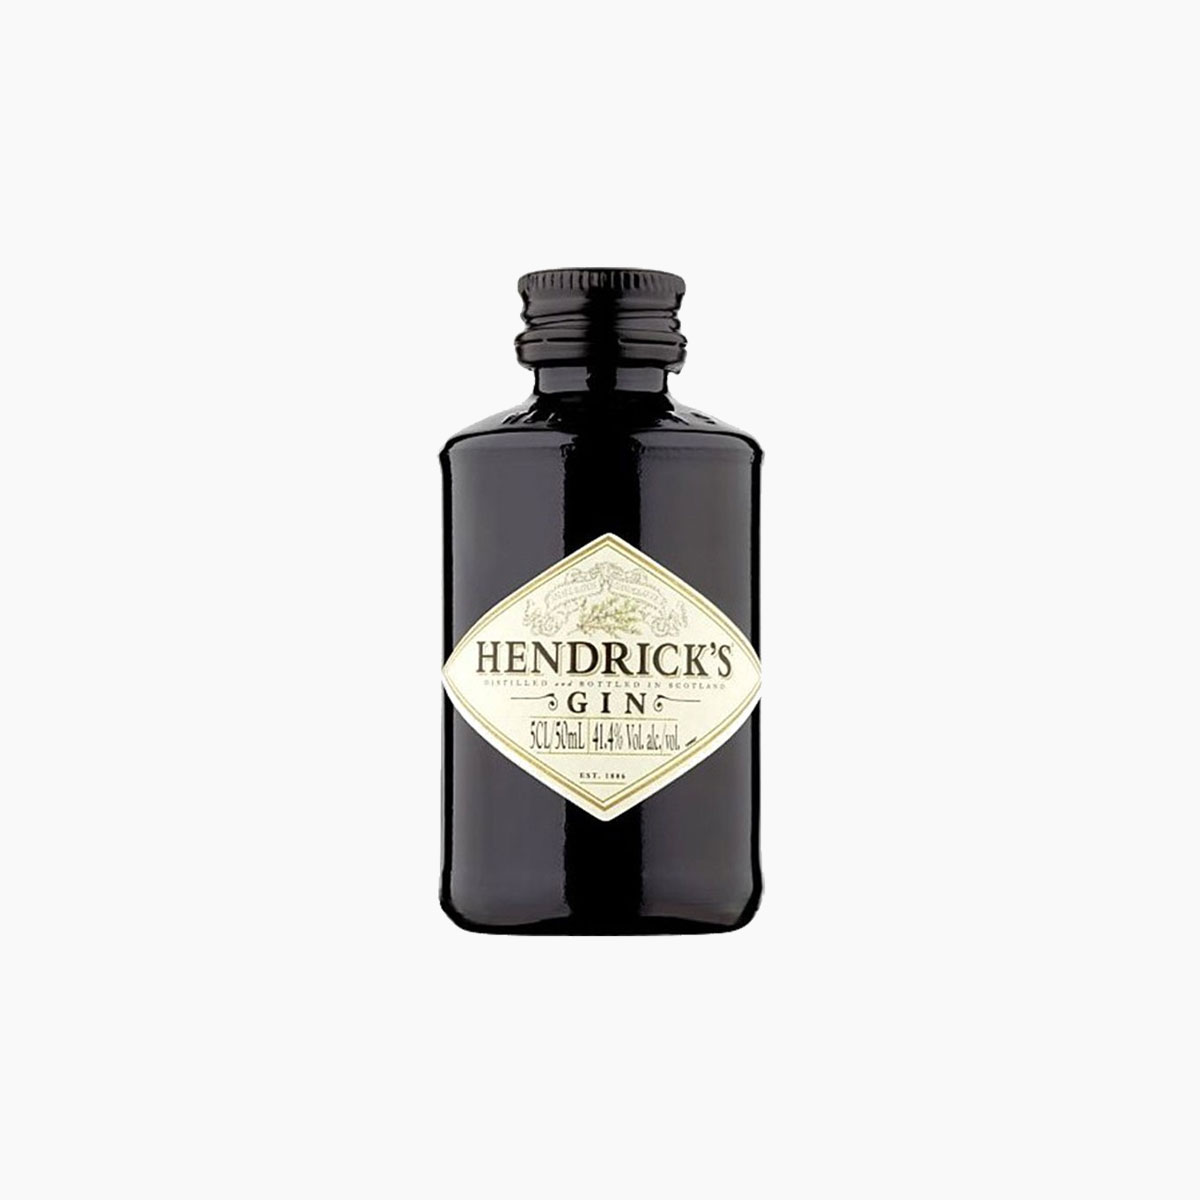 Brug Hendrick's Miniature Gin til en forbedret oplevelse